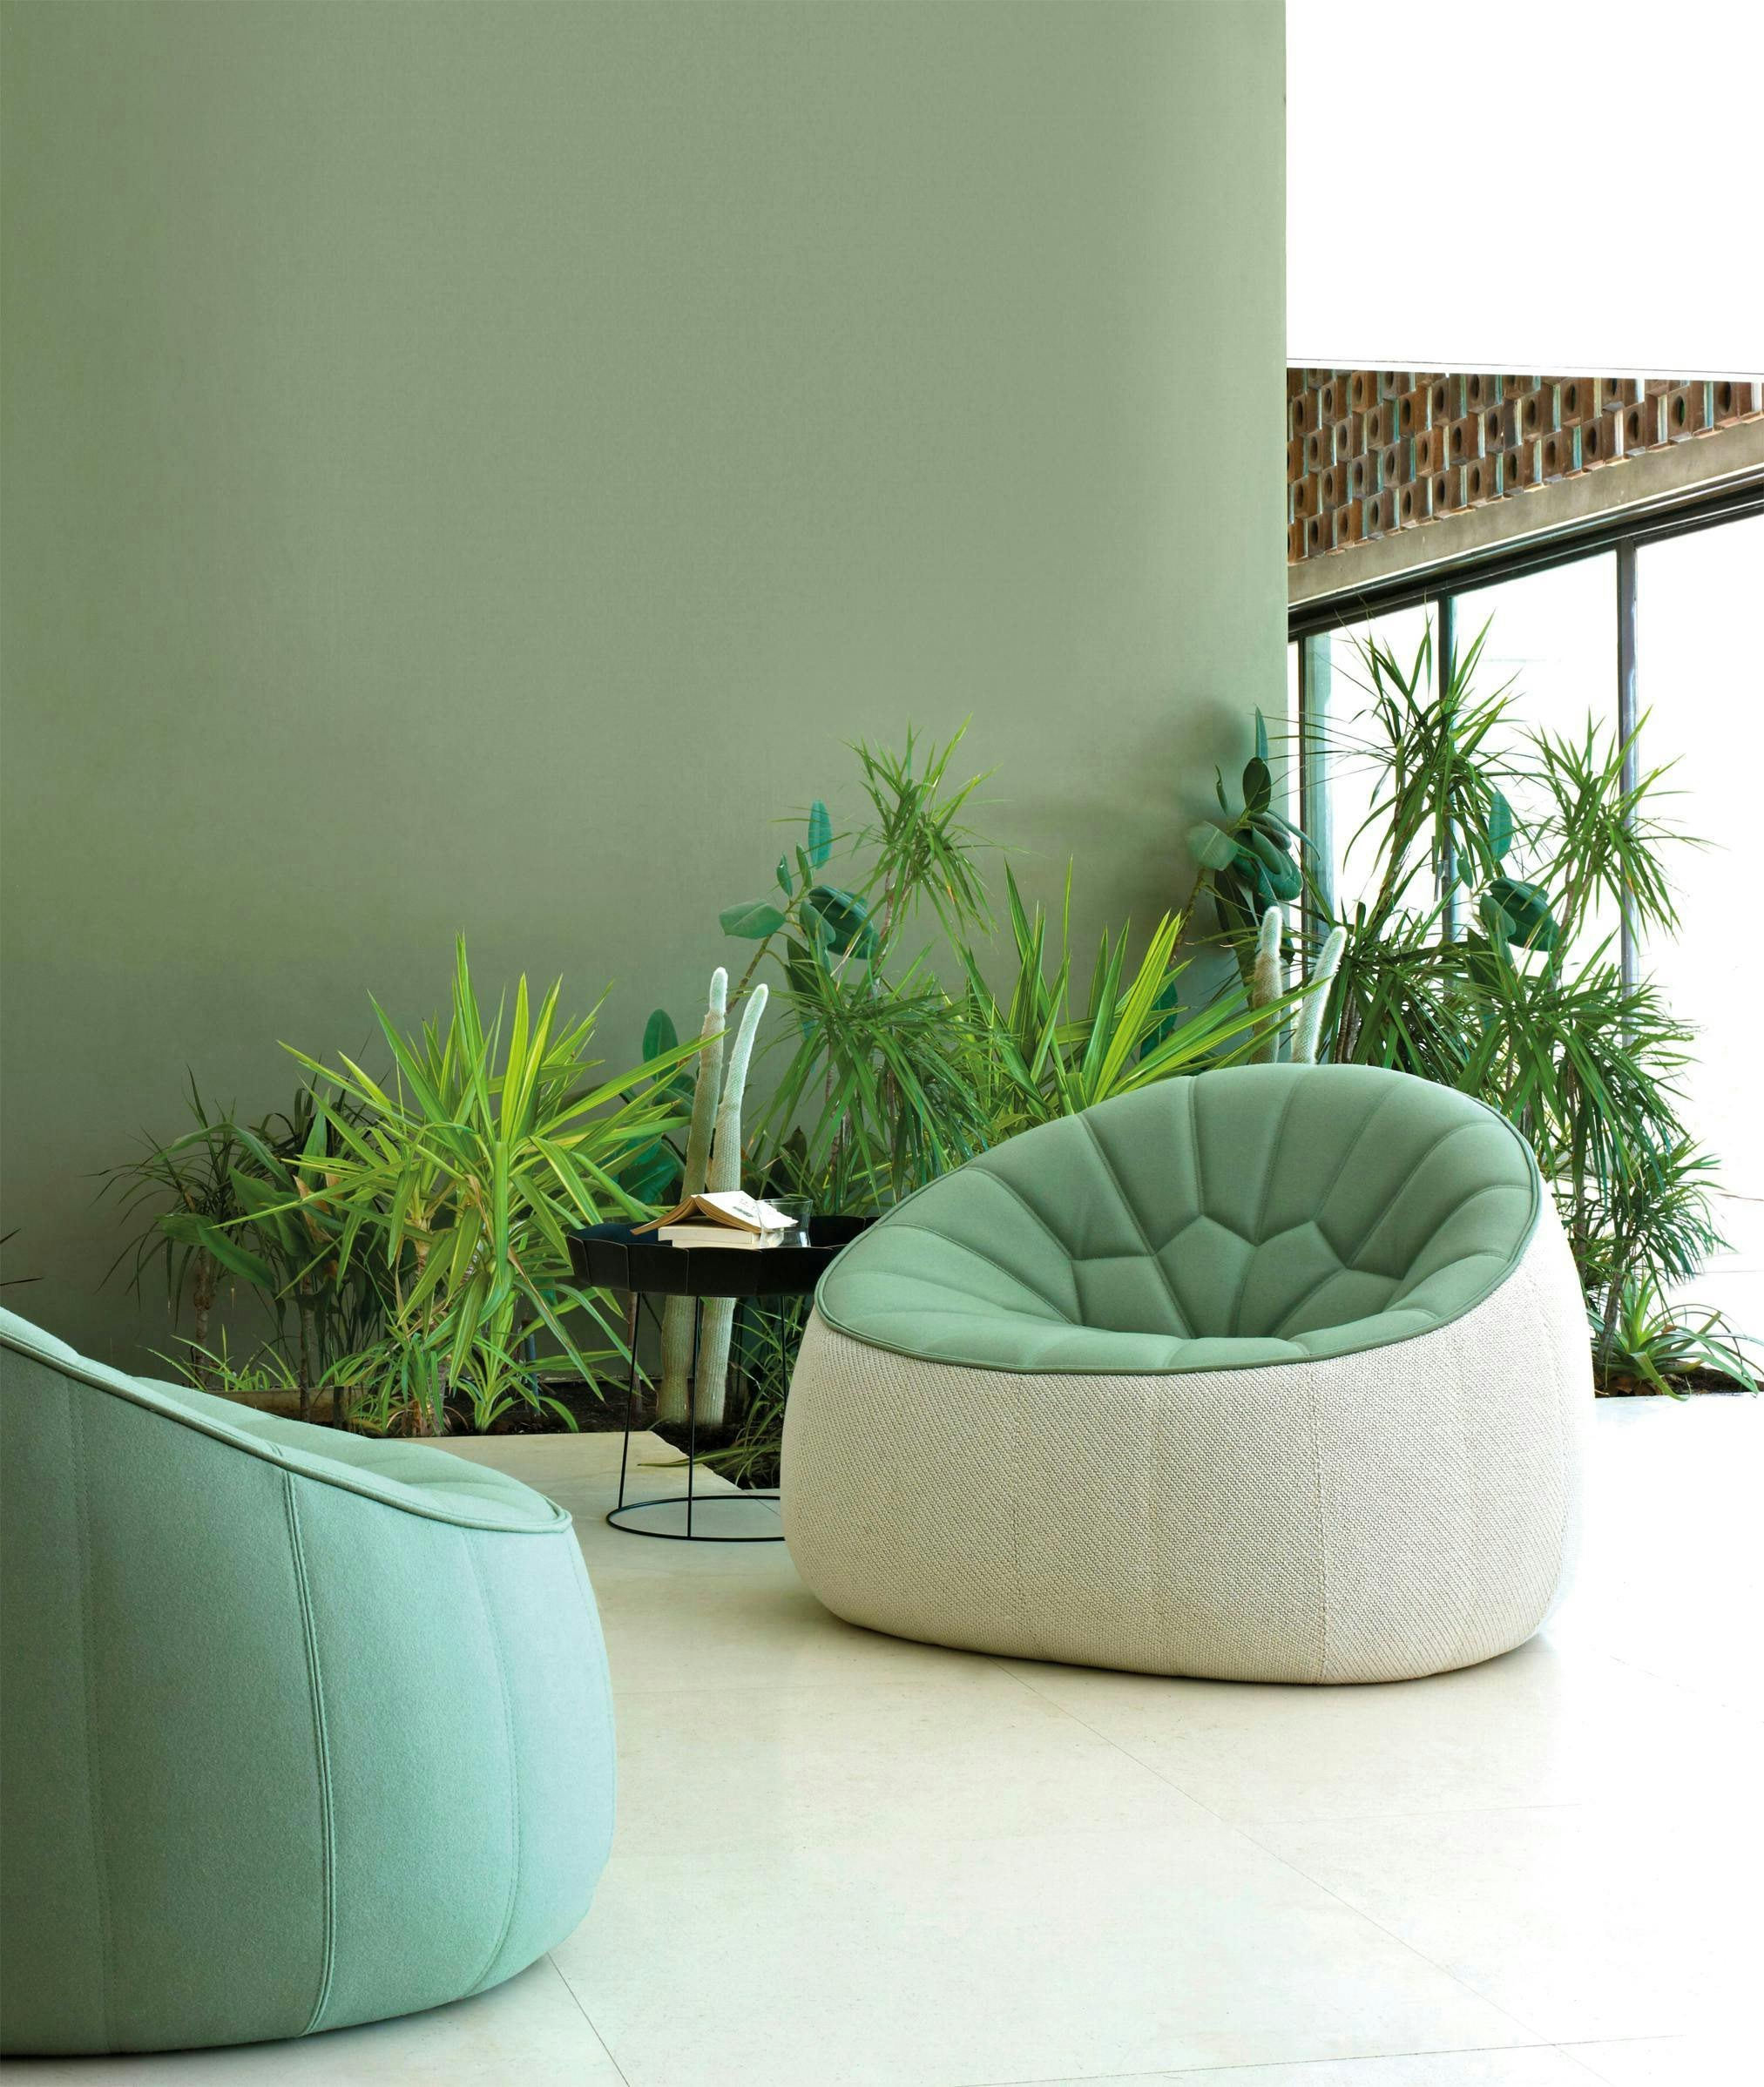 LIGNE ROSET, fauteuil “Ottoman” en textile outdoor, design Noé Duchaufour Lawrance. 